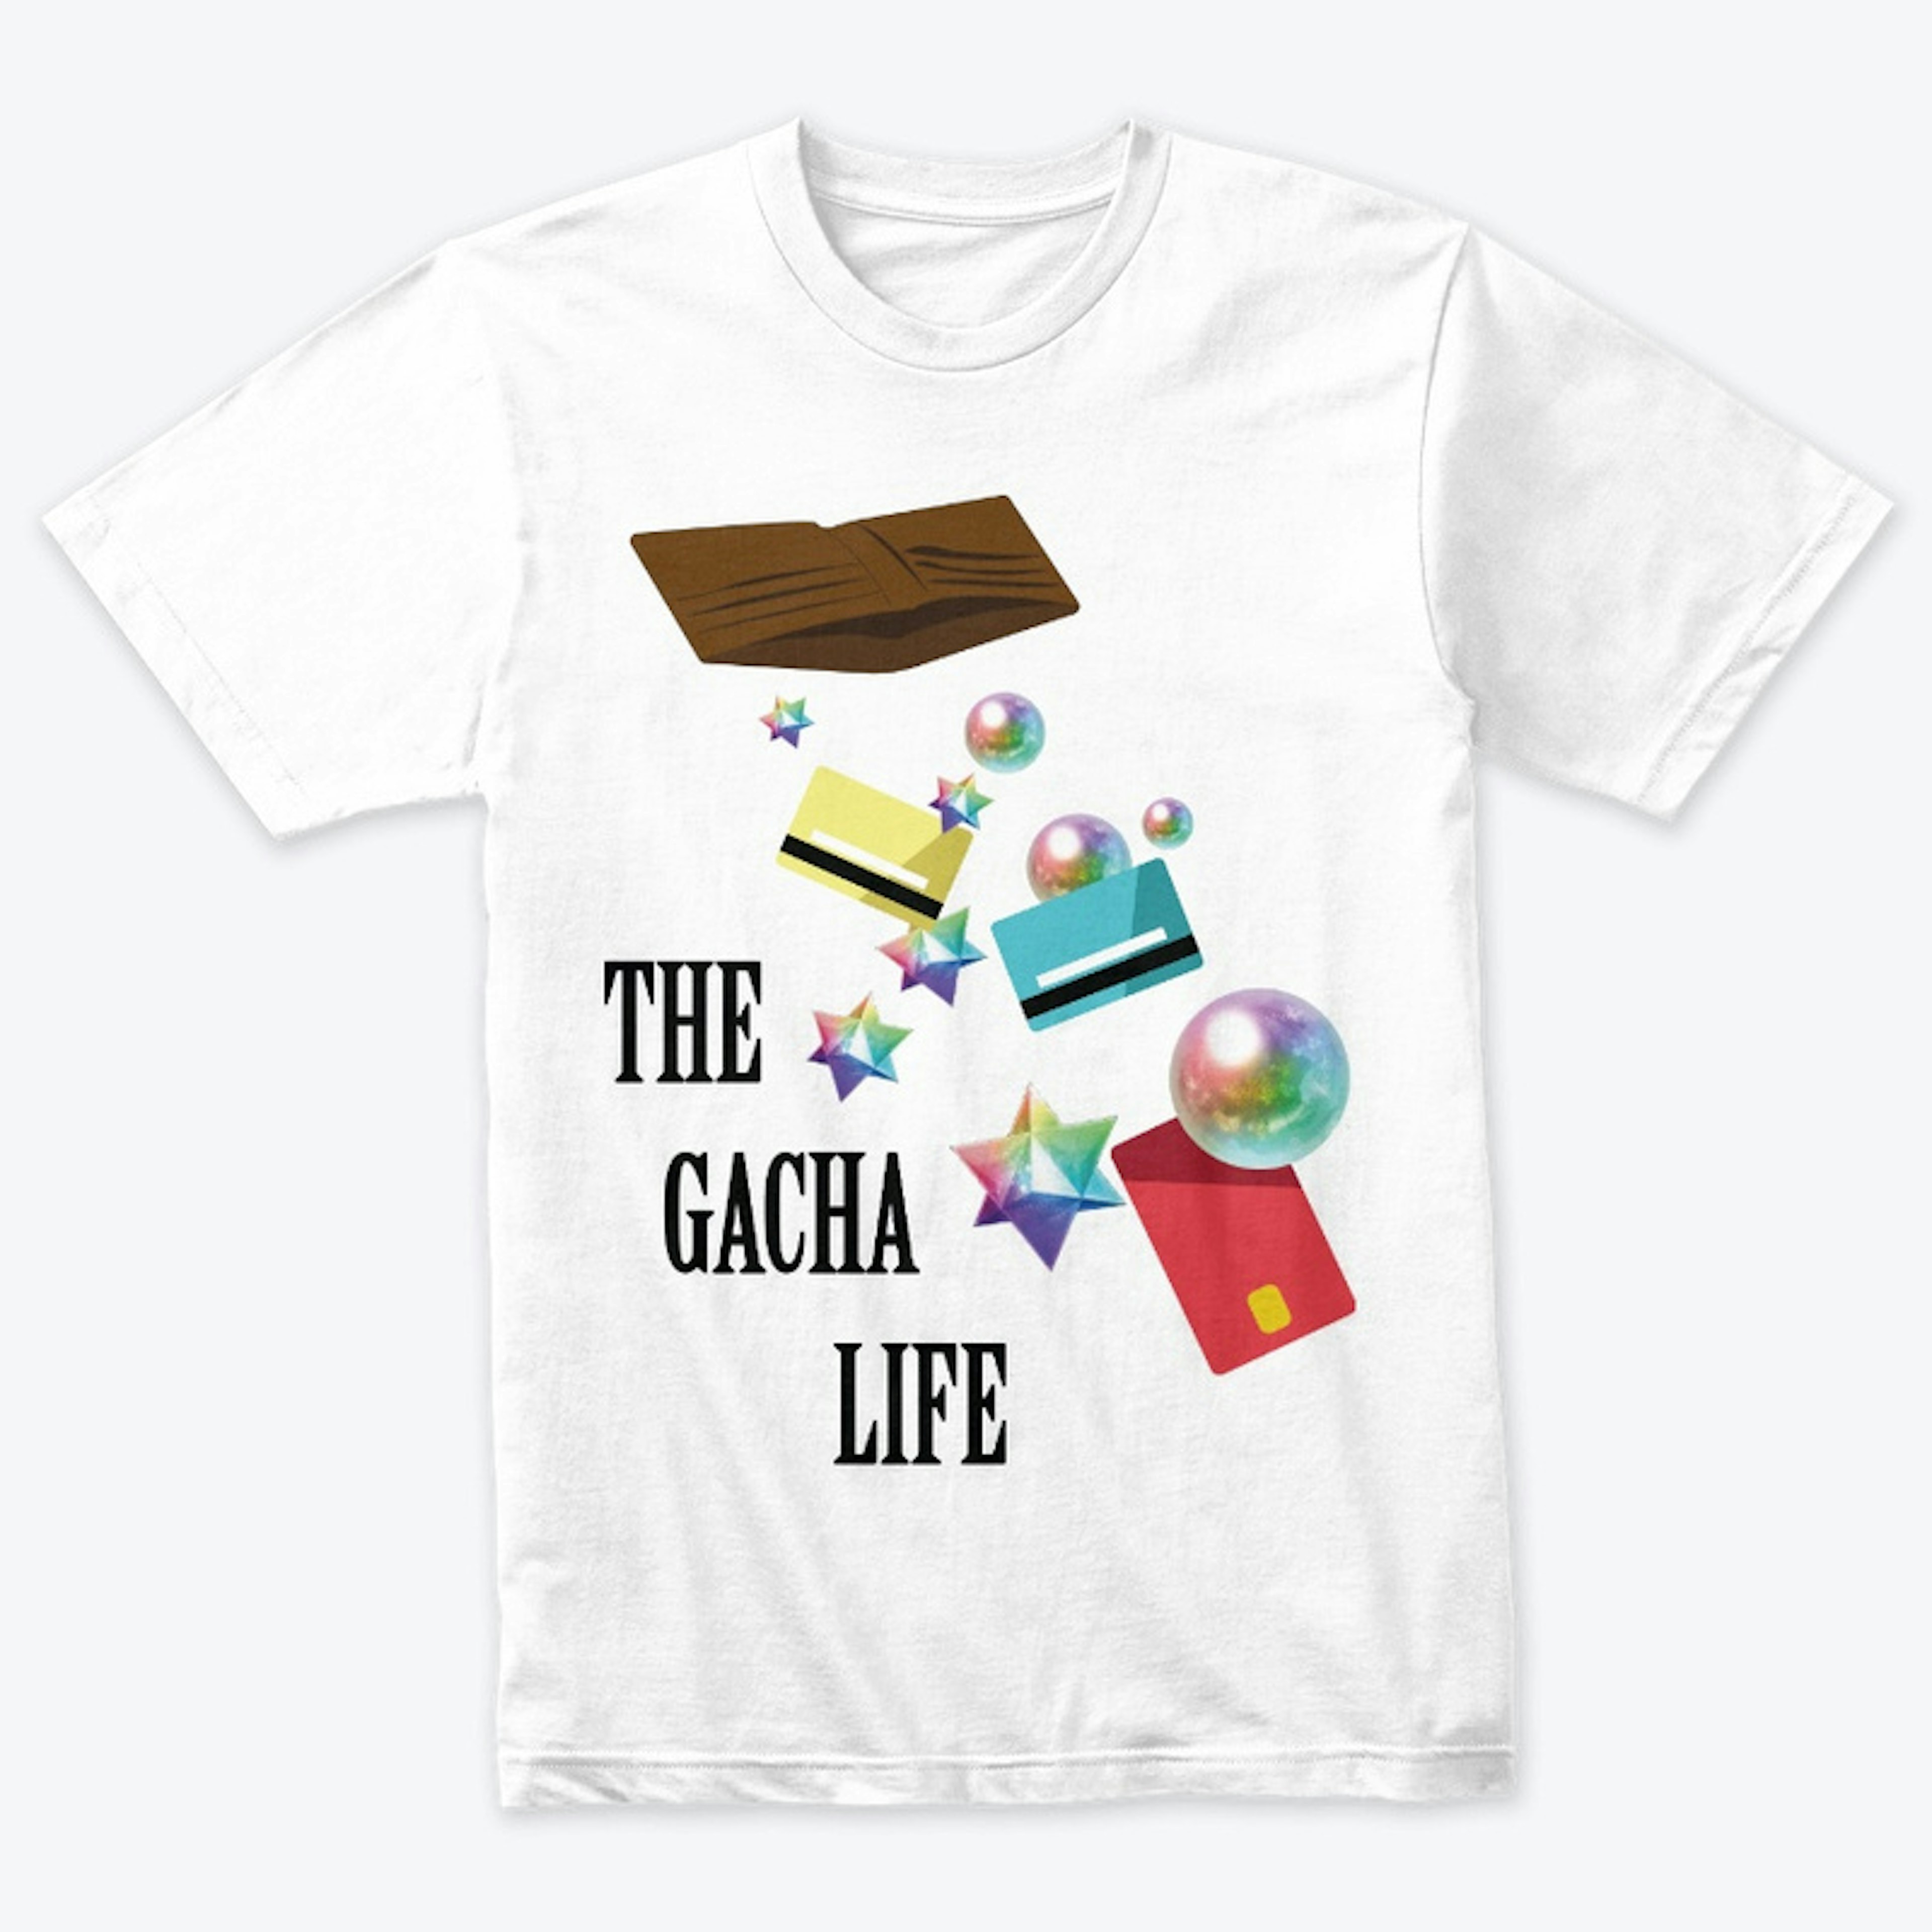 The Gacha Life